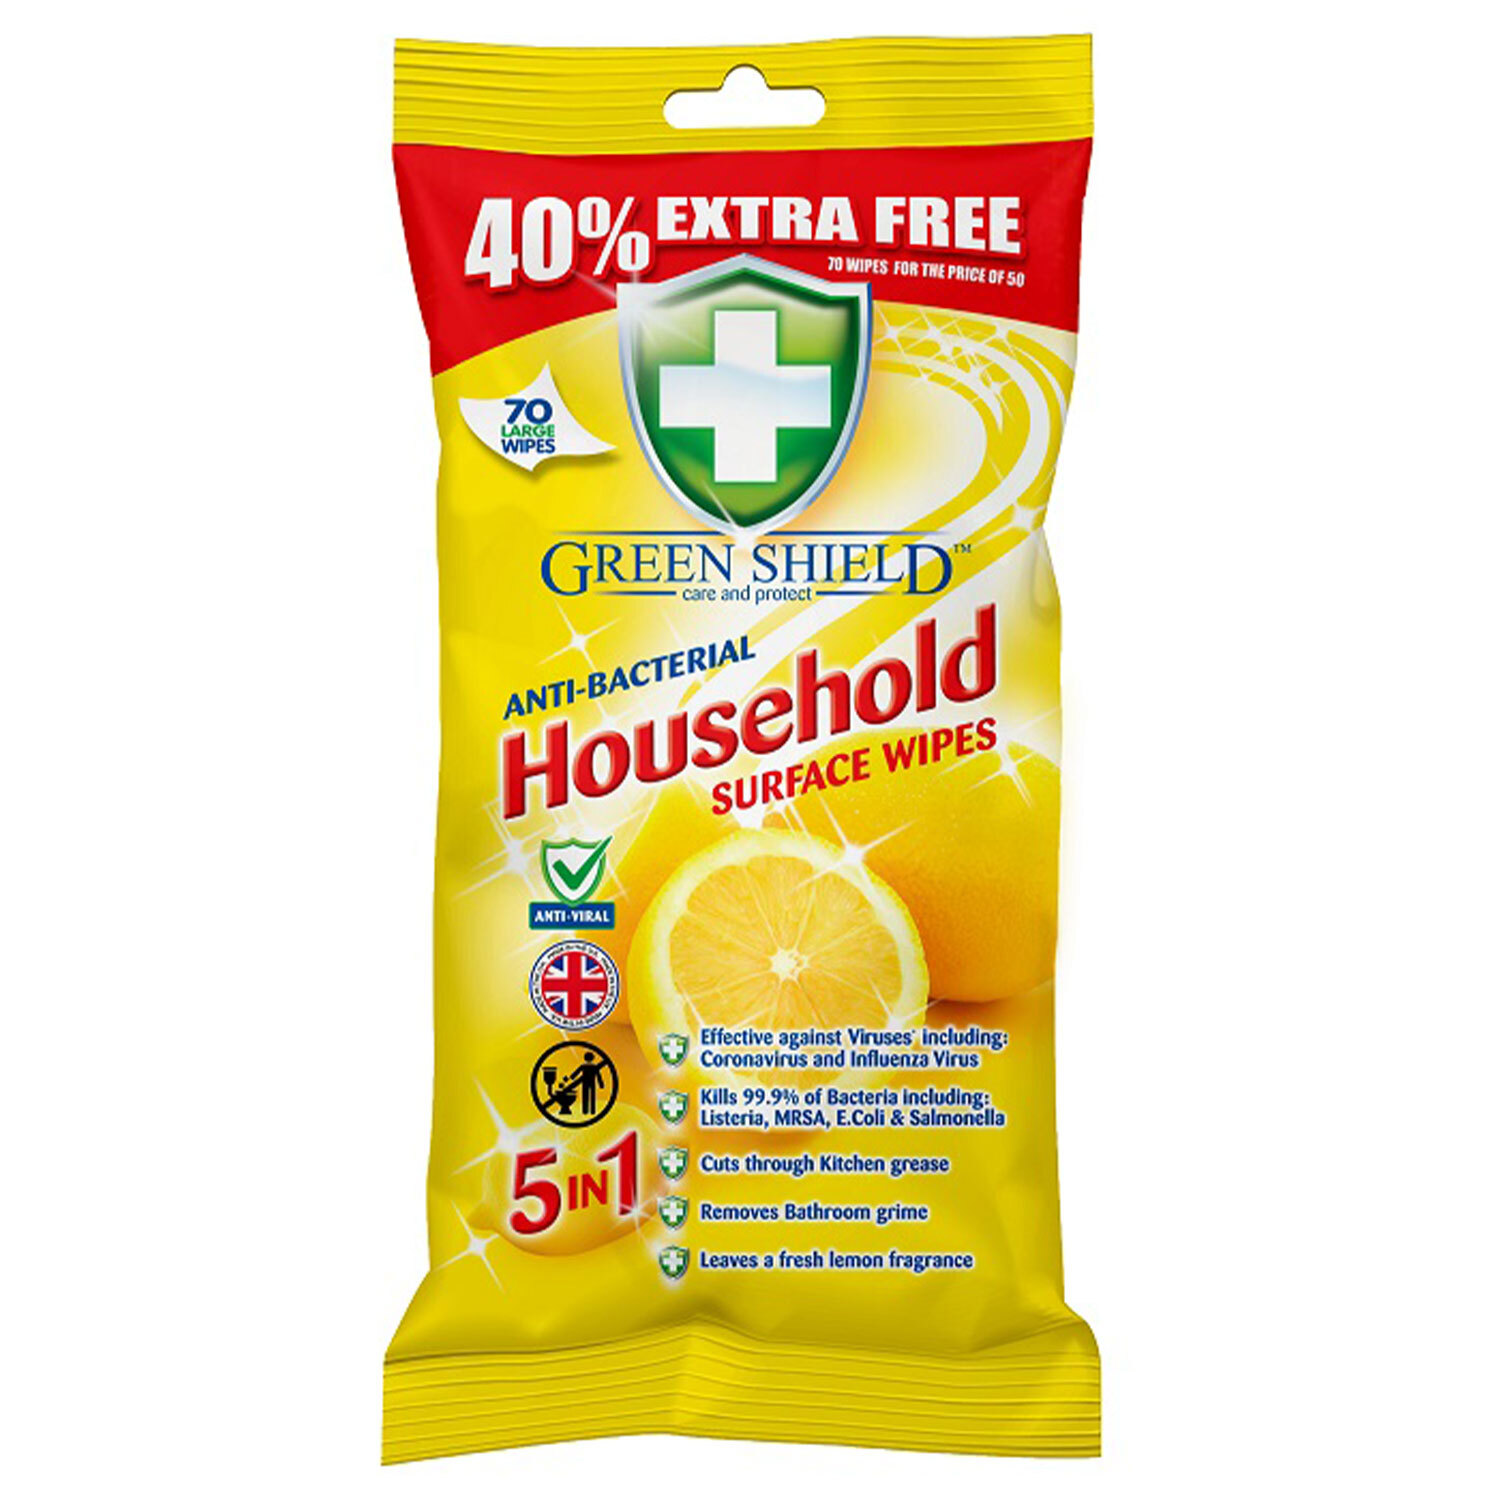 Greenshield Antibacterial Household Surface Wipe 70 Pack Image